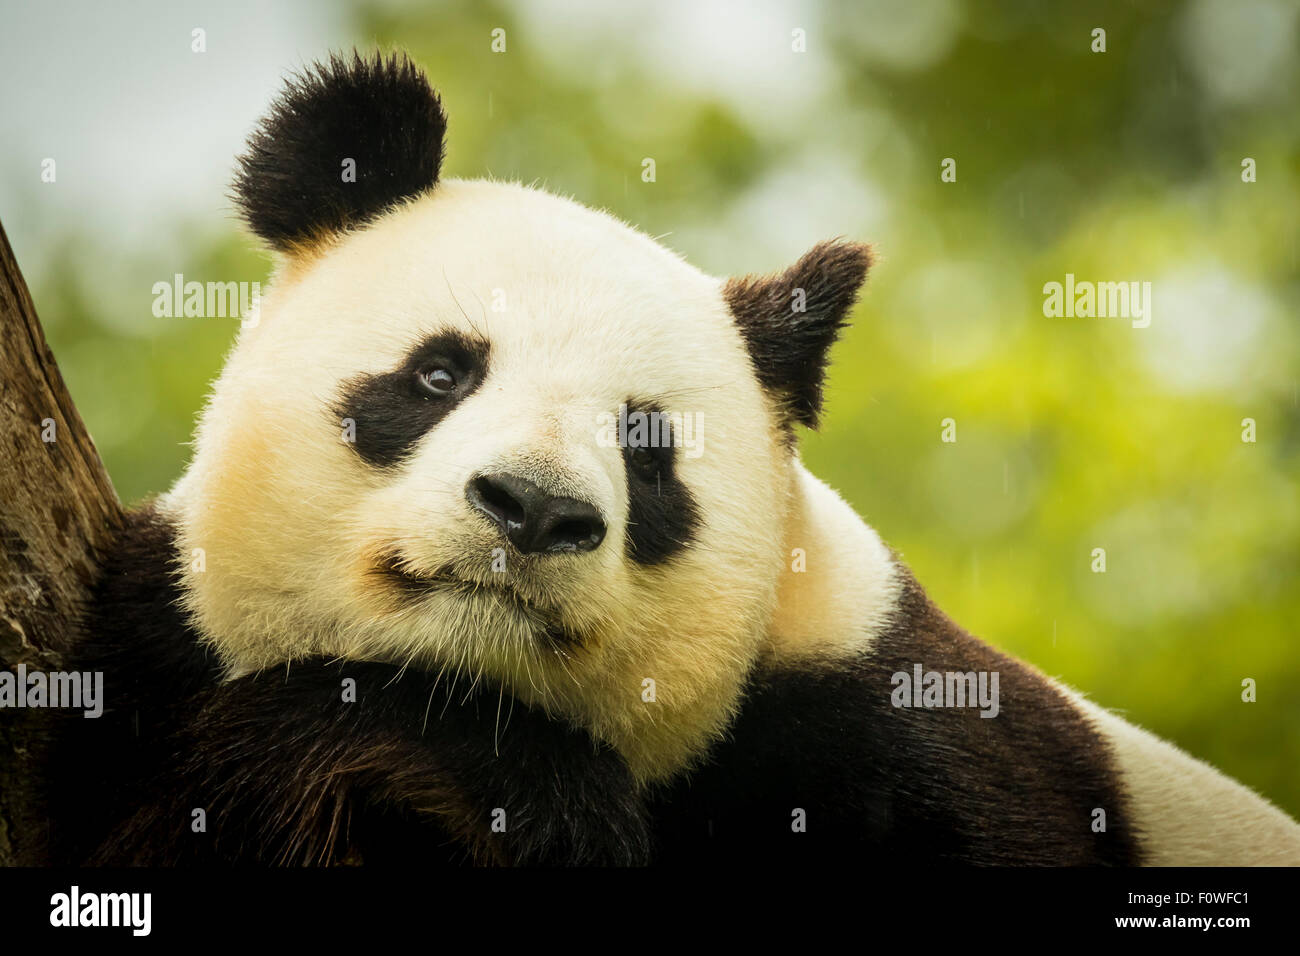 Gigantesco orso panda si addormenta durante la pioggia in una foresta dopo aver mangiato il bambù Foto Stock